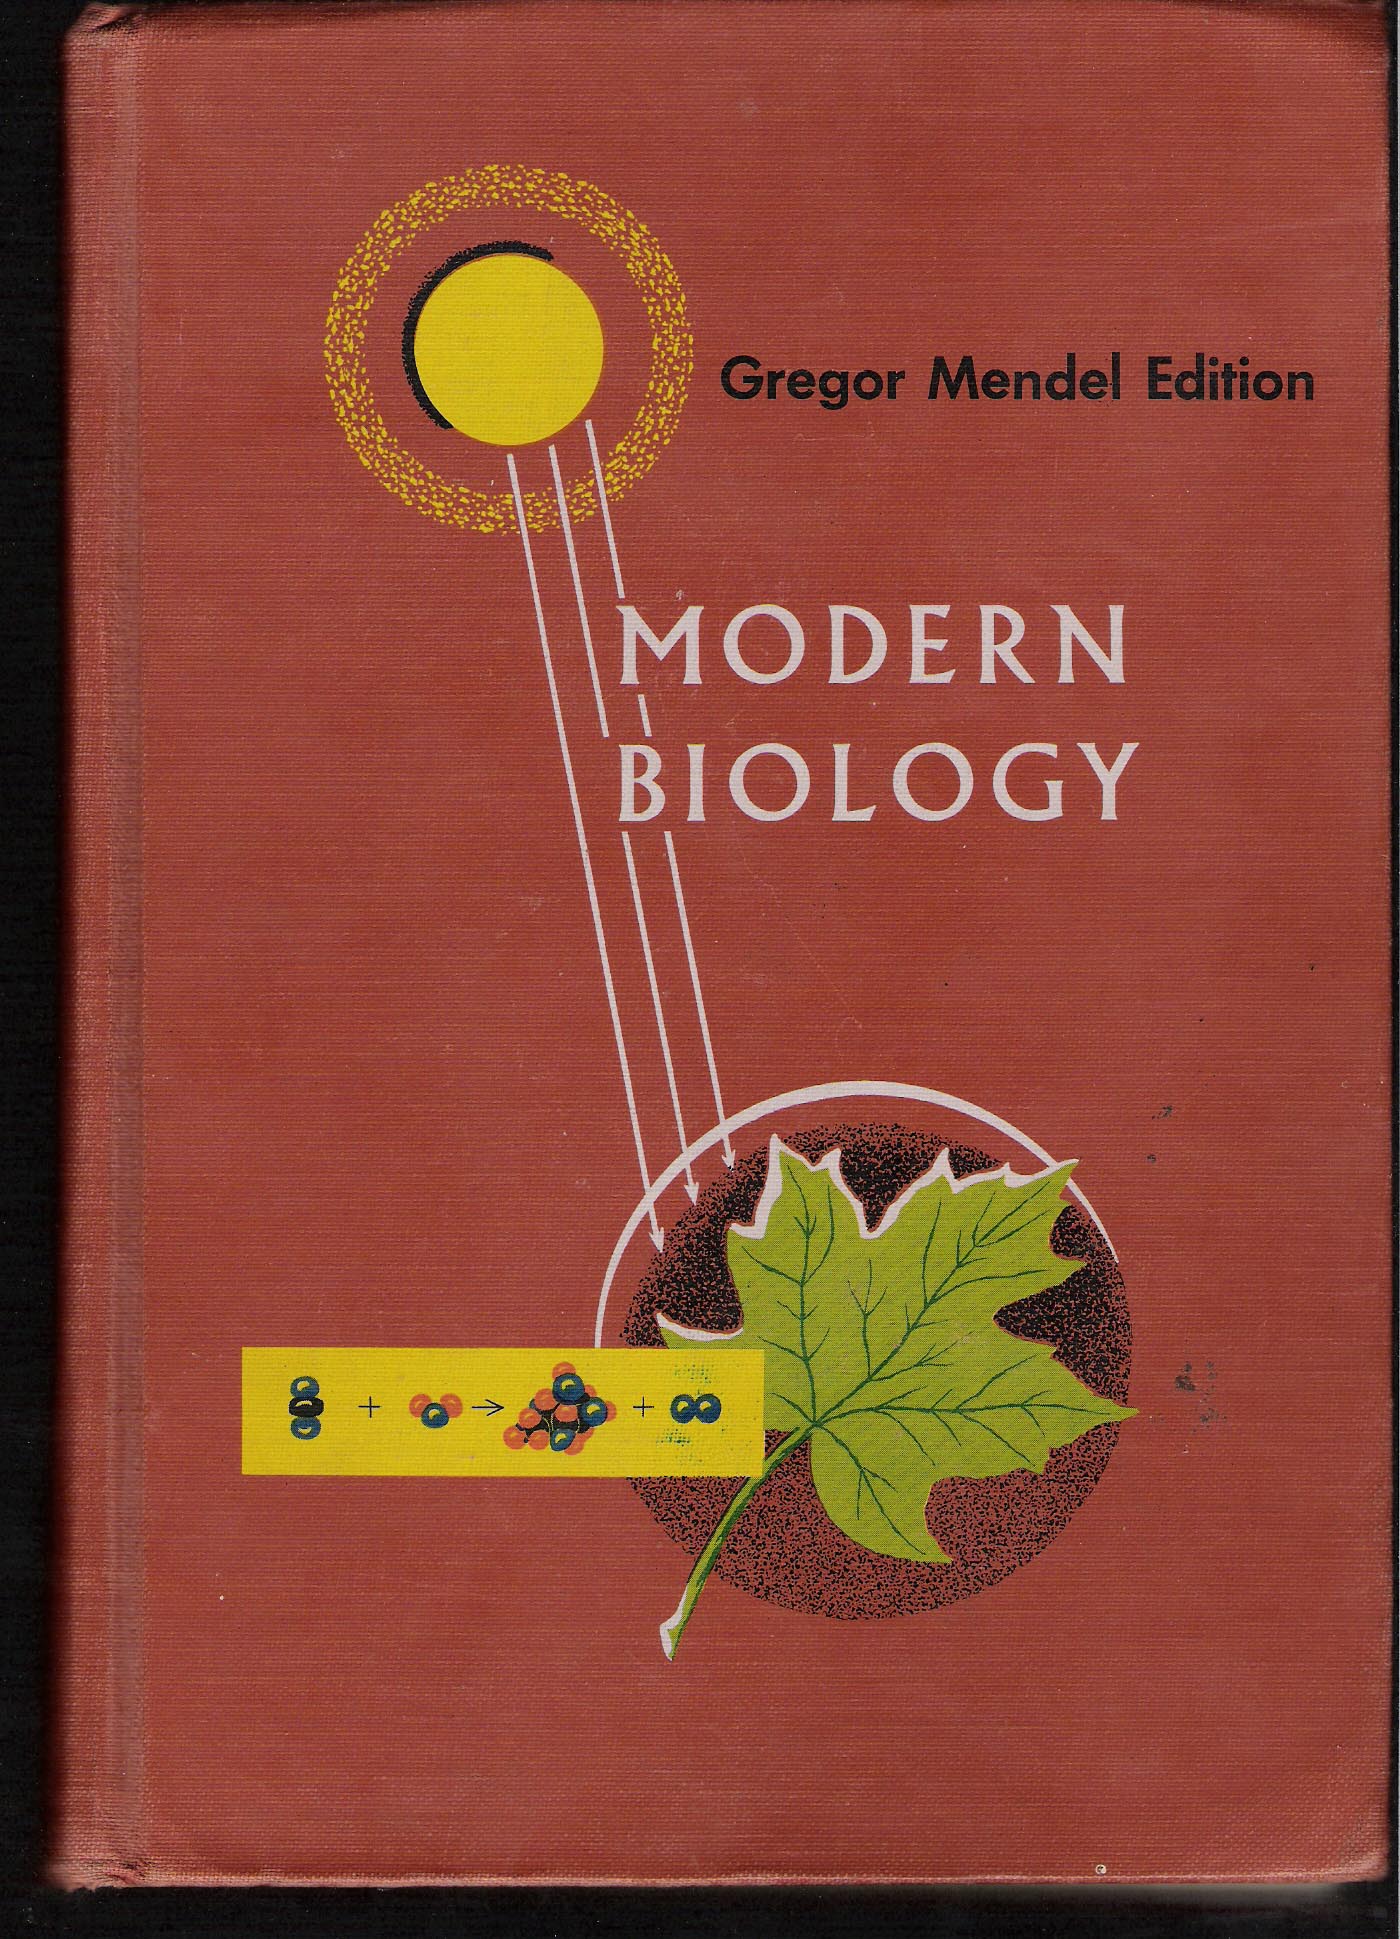 holt_modern_biology_textbook